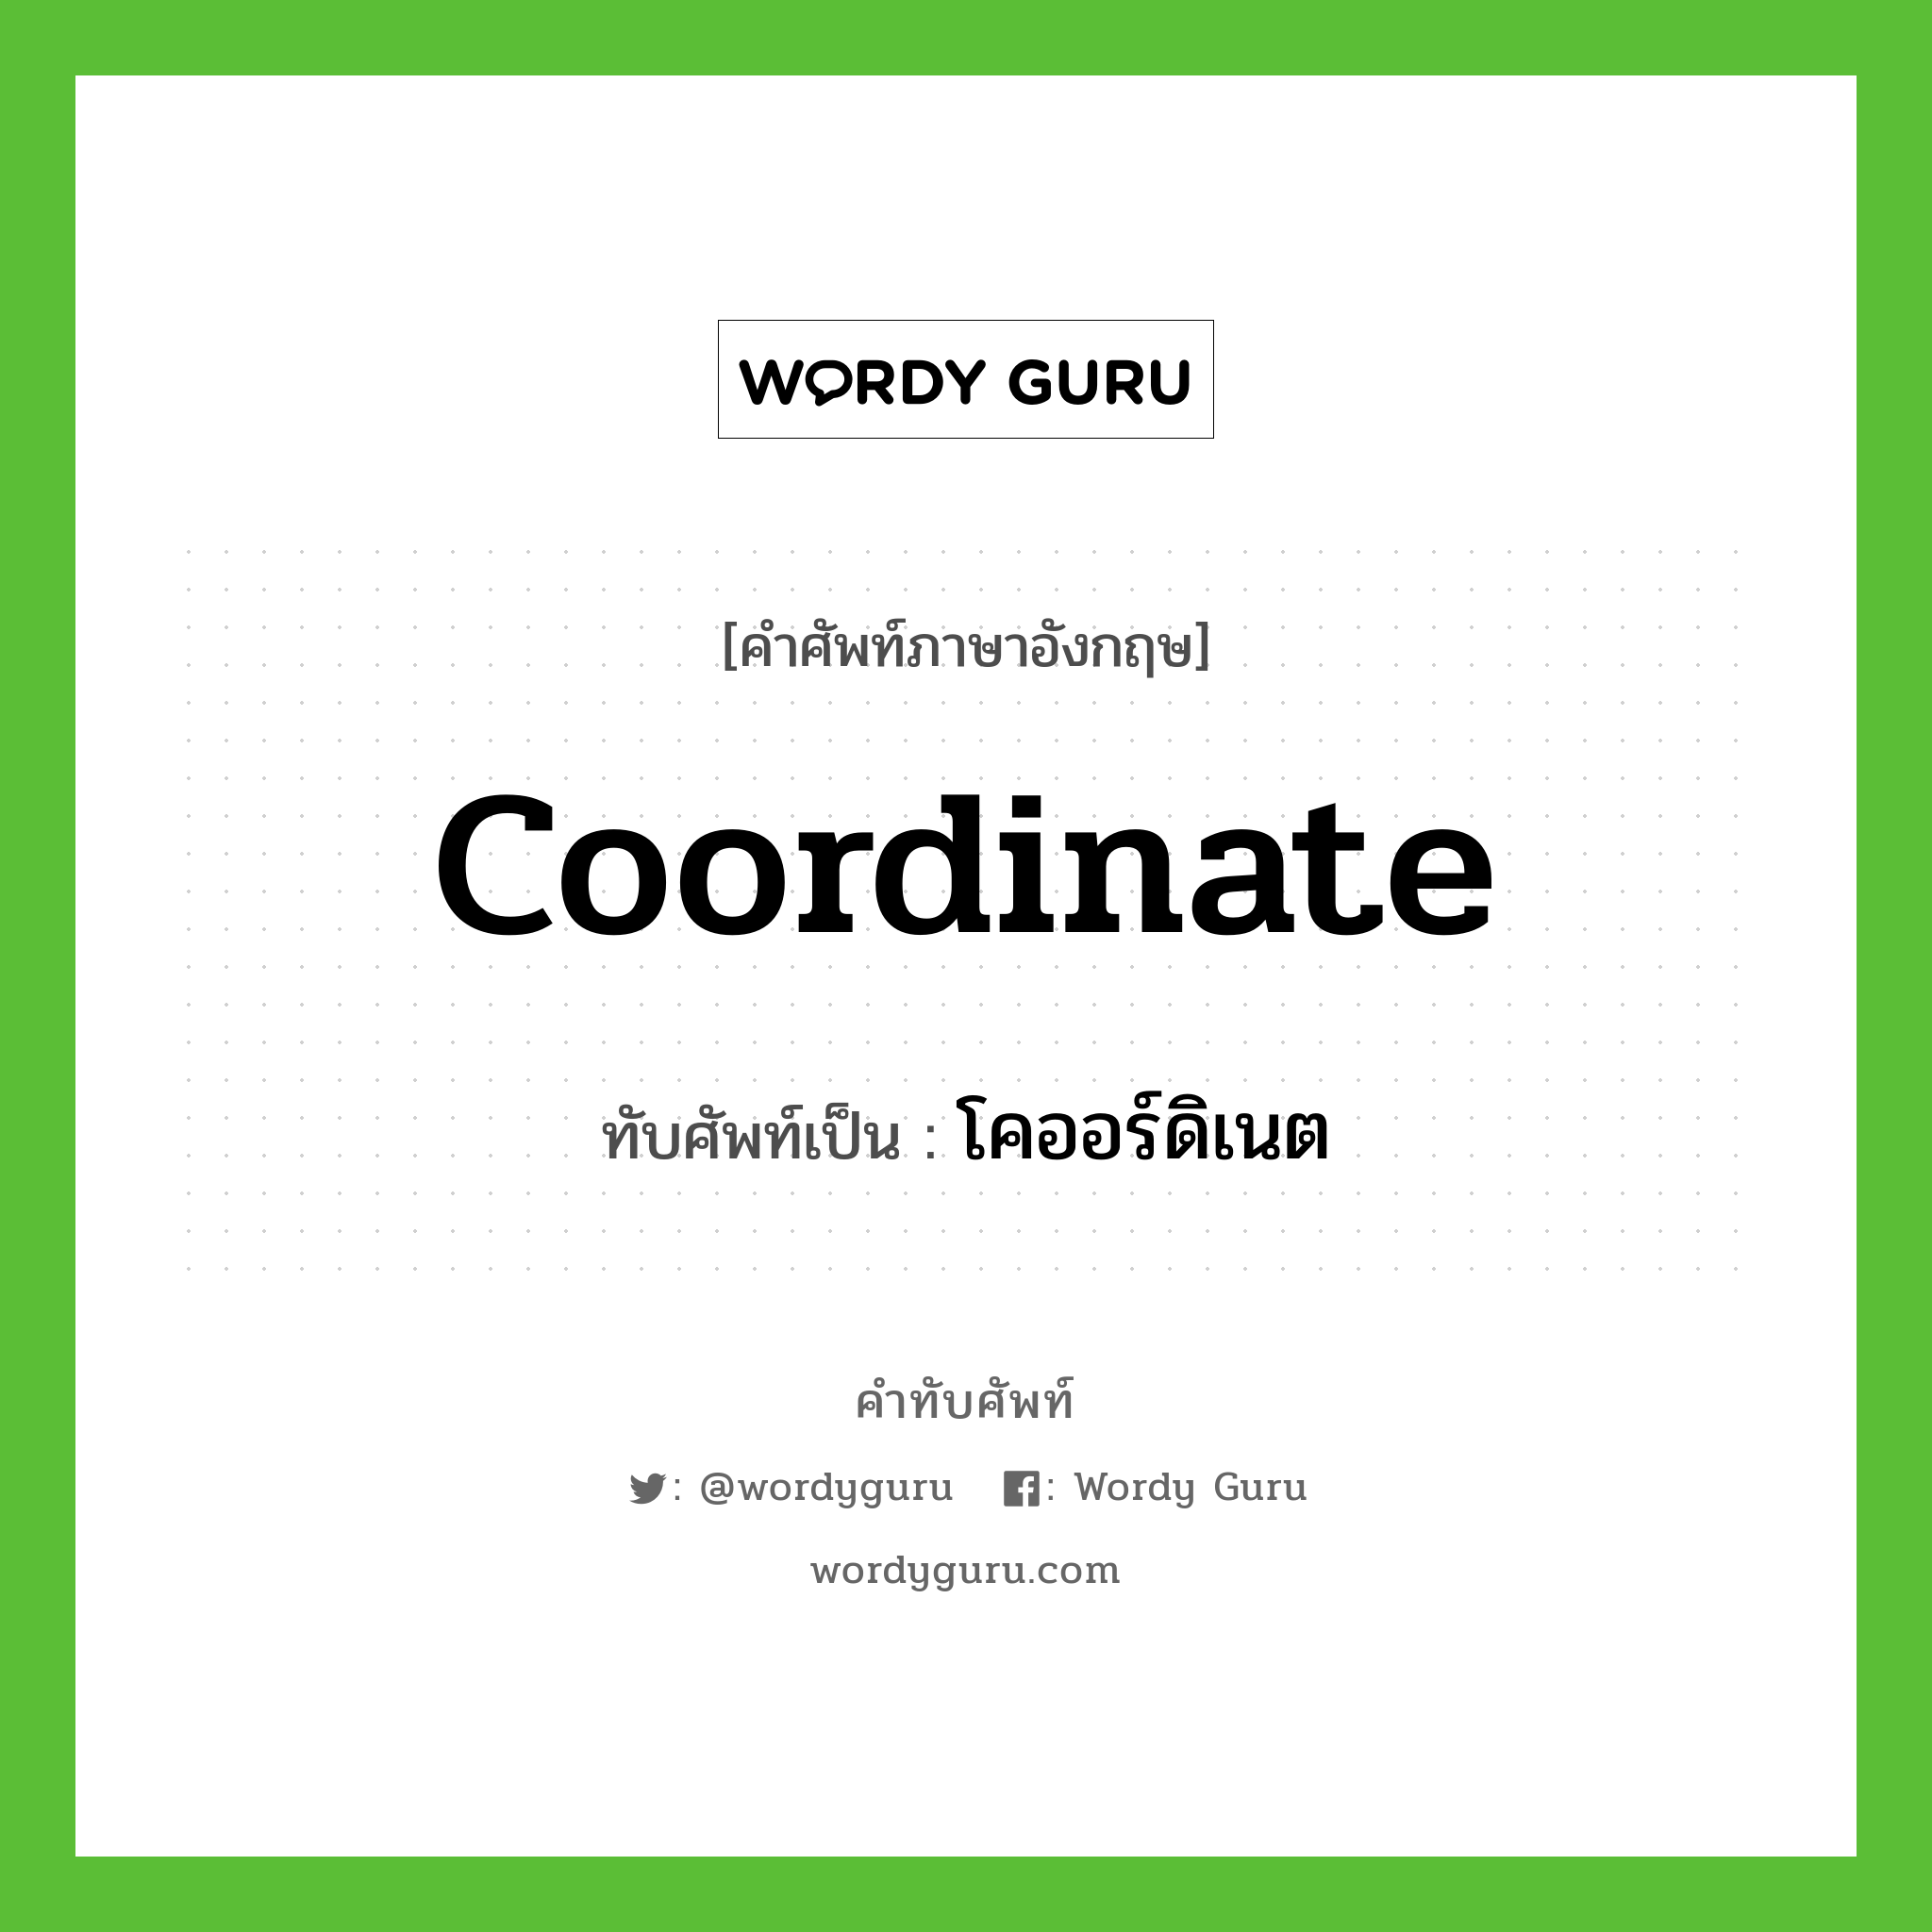 coordinate เขียนเป็นคำไทยว่าอะไร?, คำศัพท์ภาษาอังกฤษ coordinate ทับศัพท์เป็น โคออร์ดิเนต